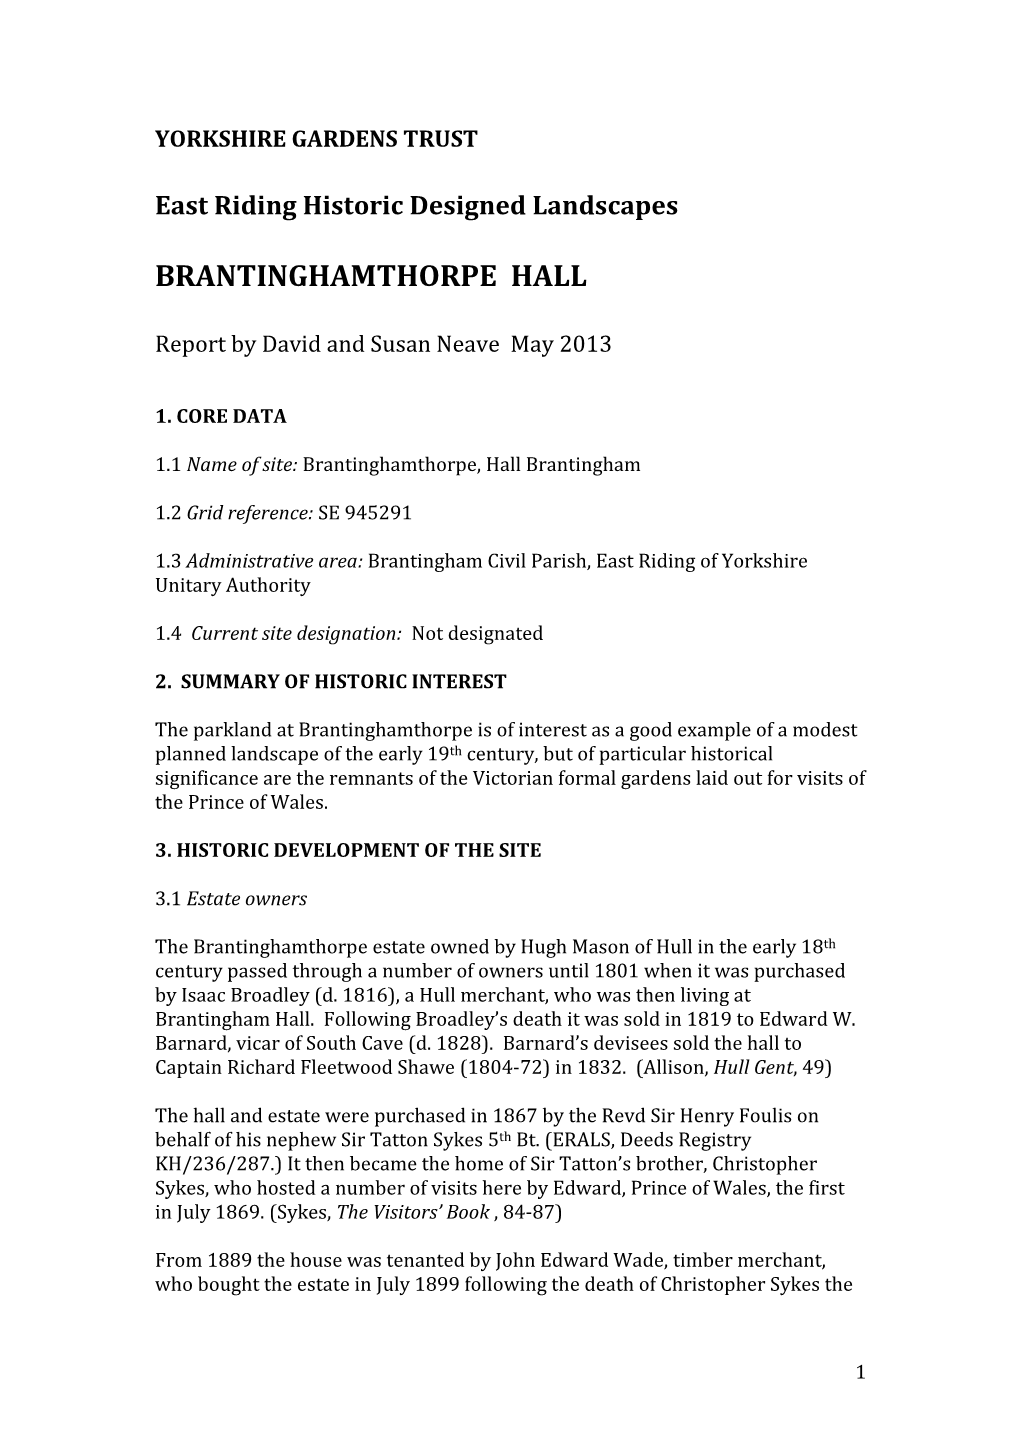 Brantinghamthorpe Hall